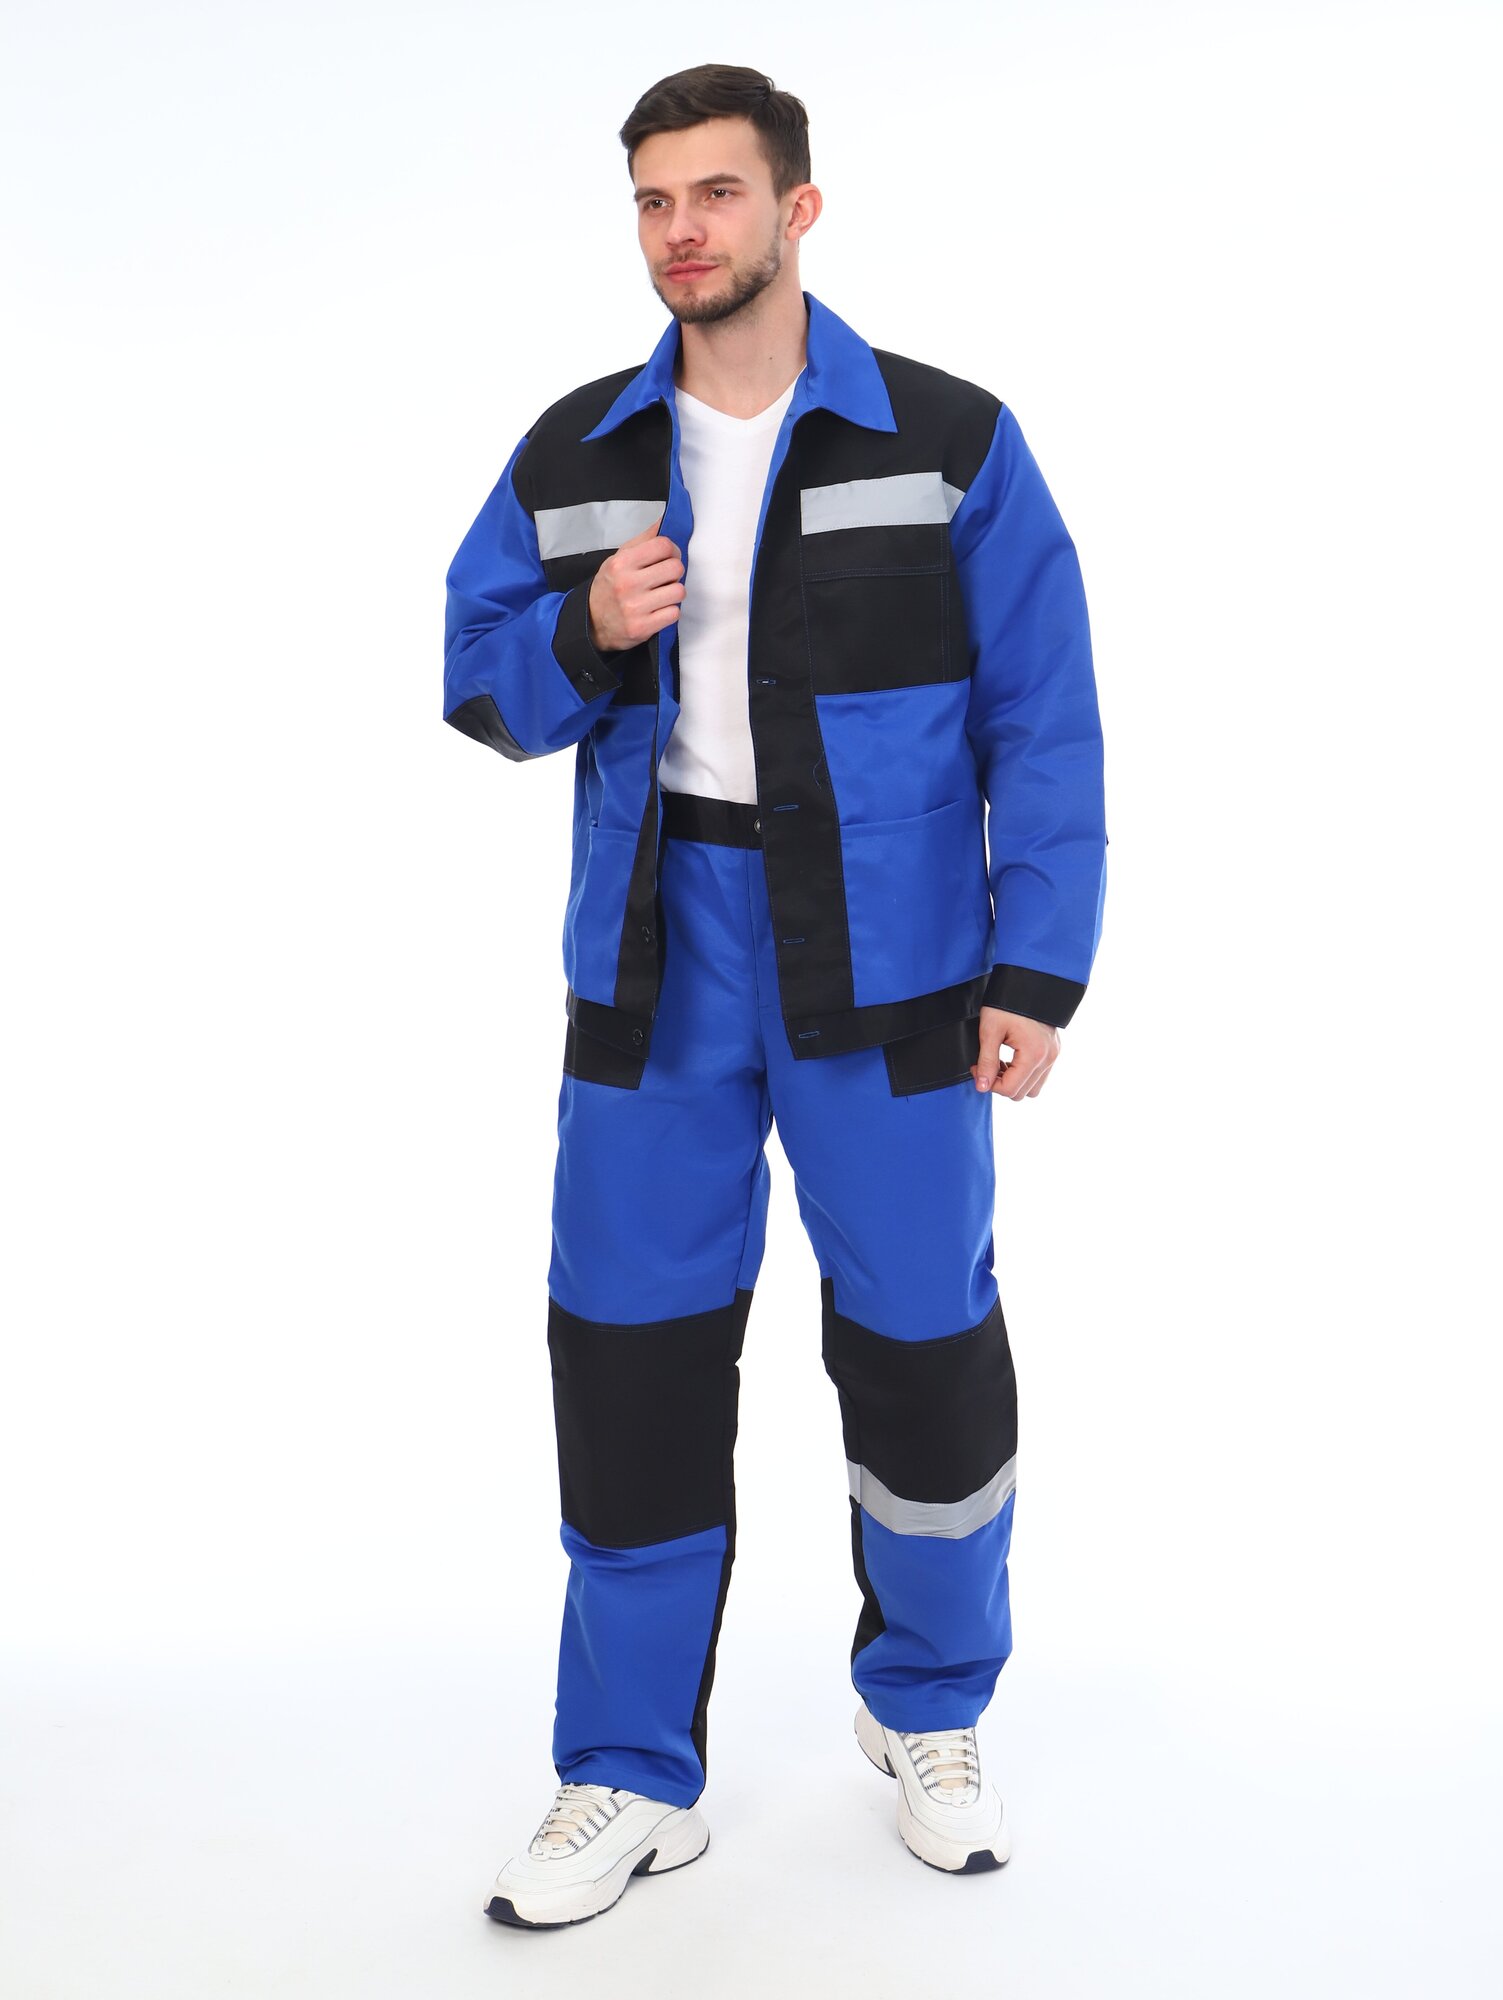 Костюм мужской рабочий (куртка + брюки), спецовка для ремонта, строительства, дачи, цвет синий/черный, размер 52-54 (170-176)